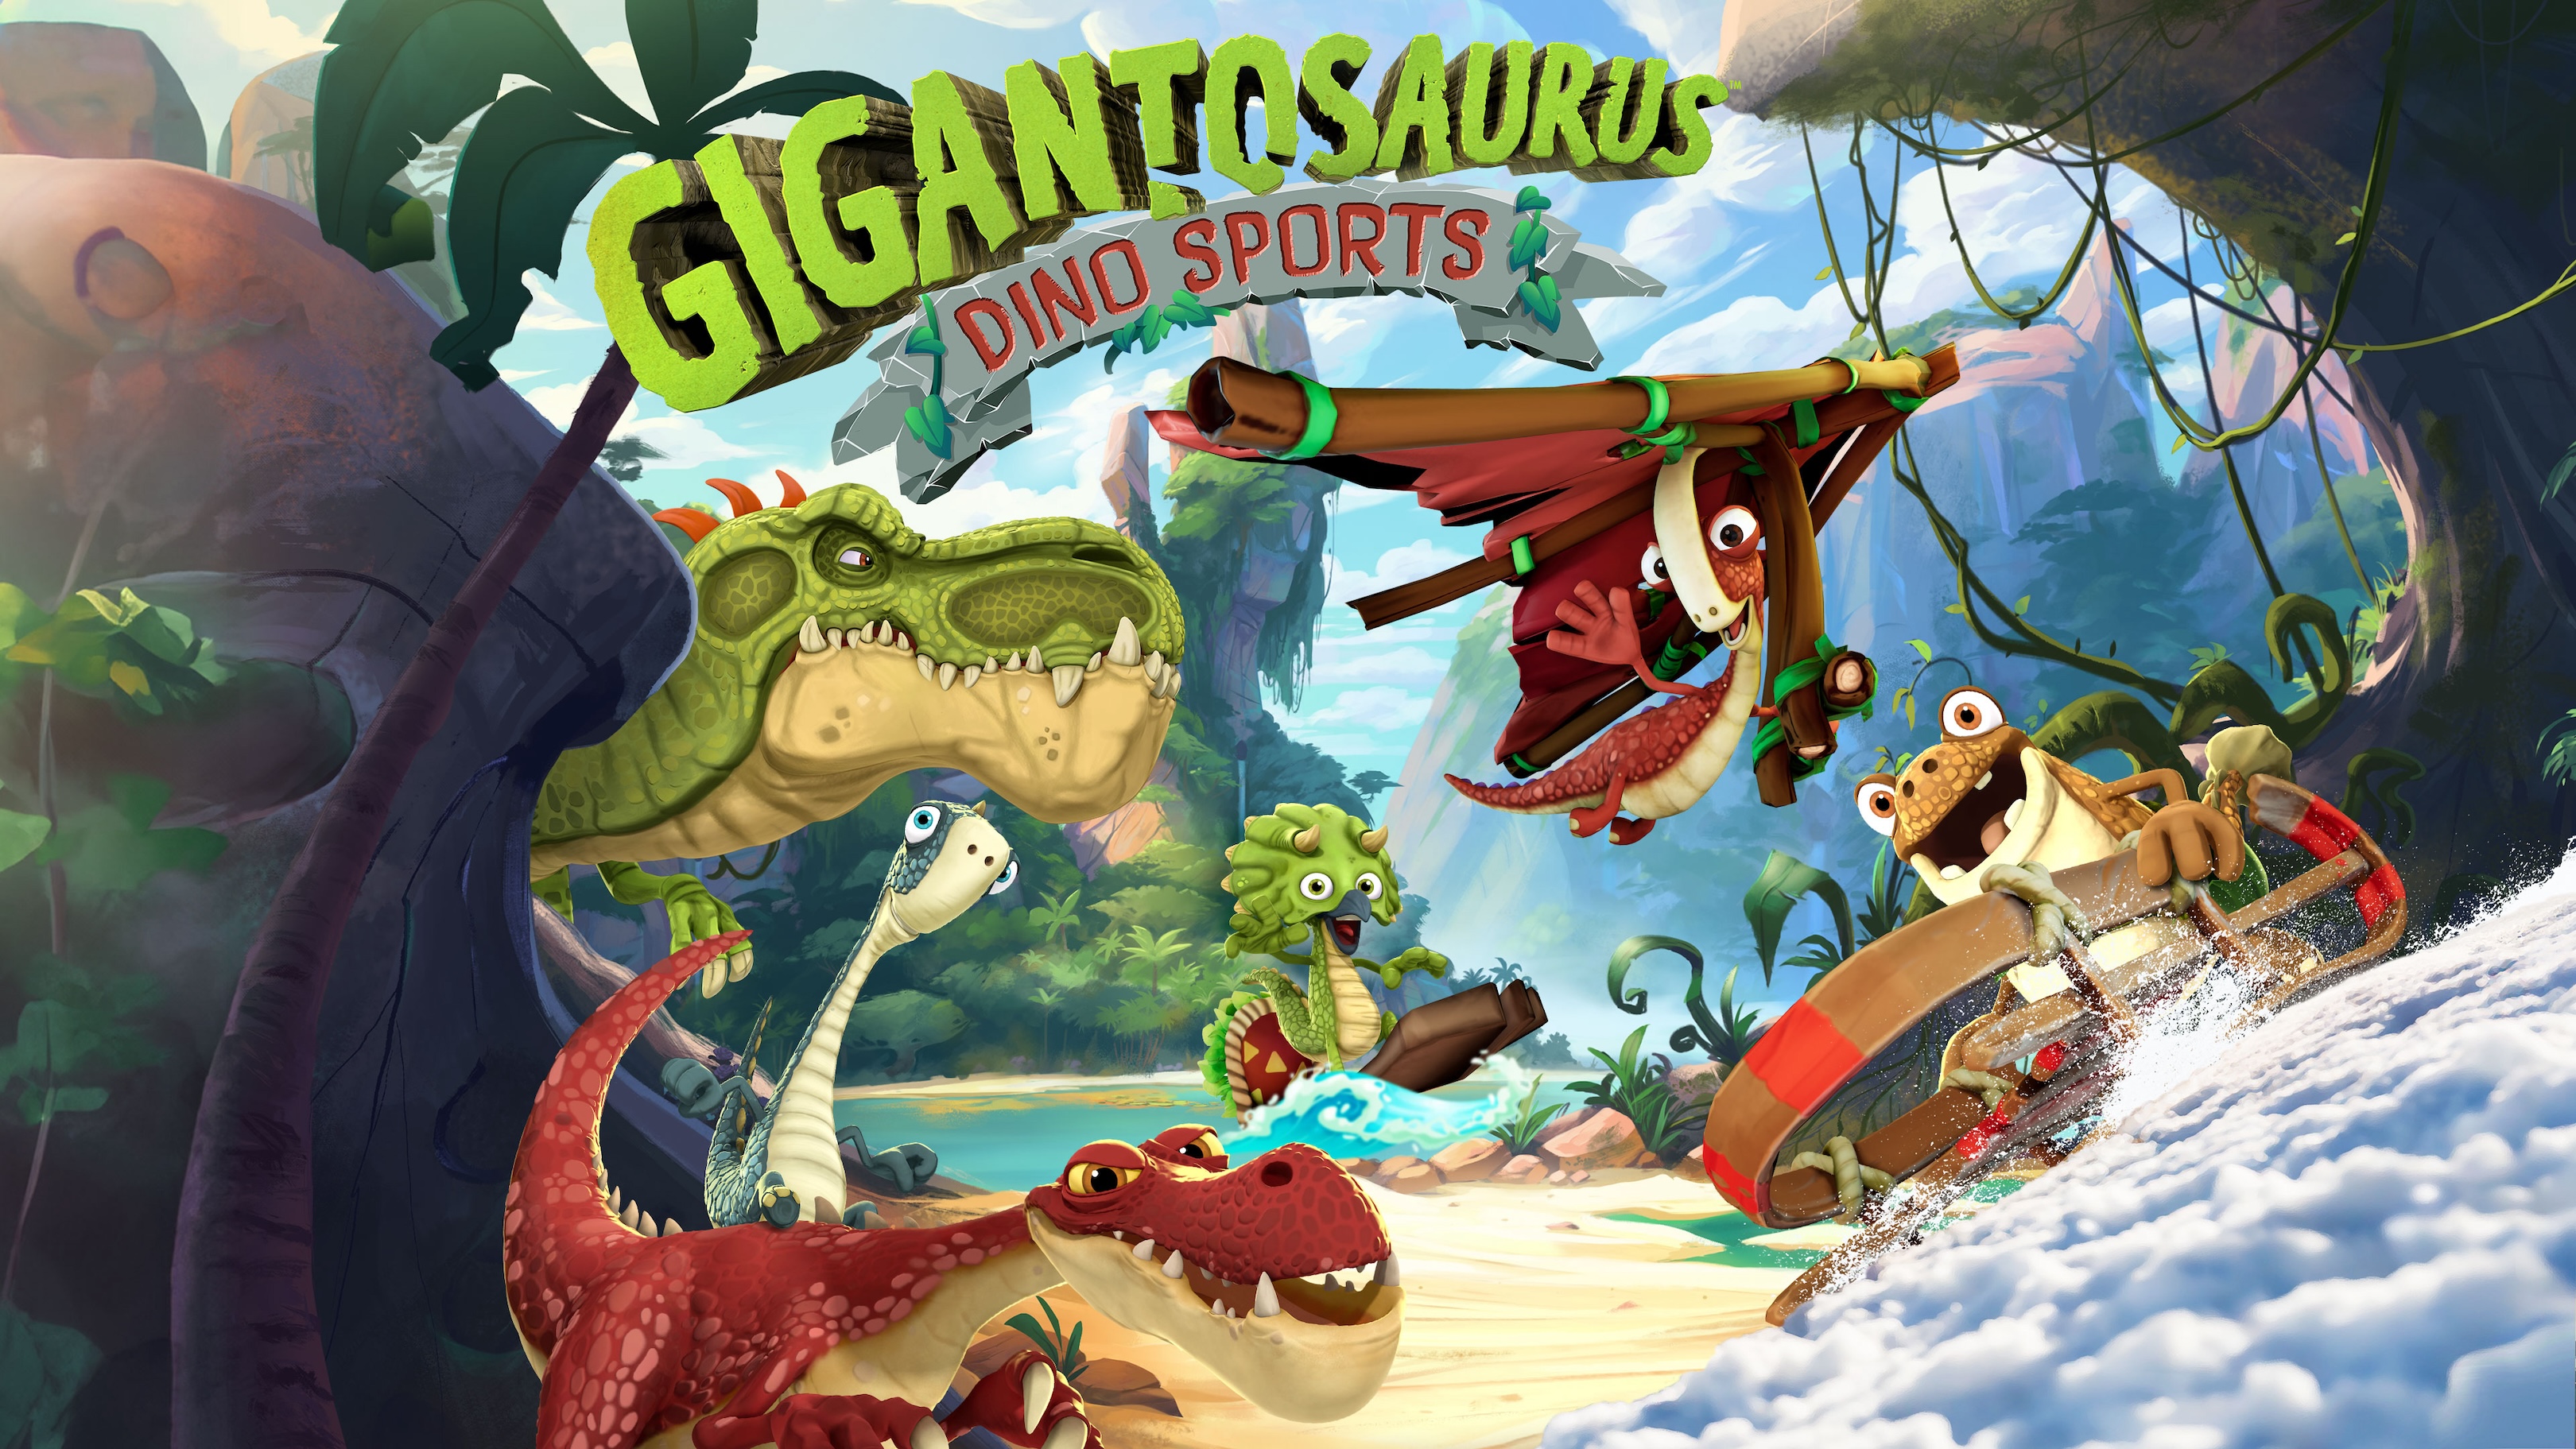 Грядет что-то грандиозное — Gigantosaurus: Dino Sports подробно описано для ПК и консоли